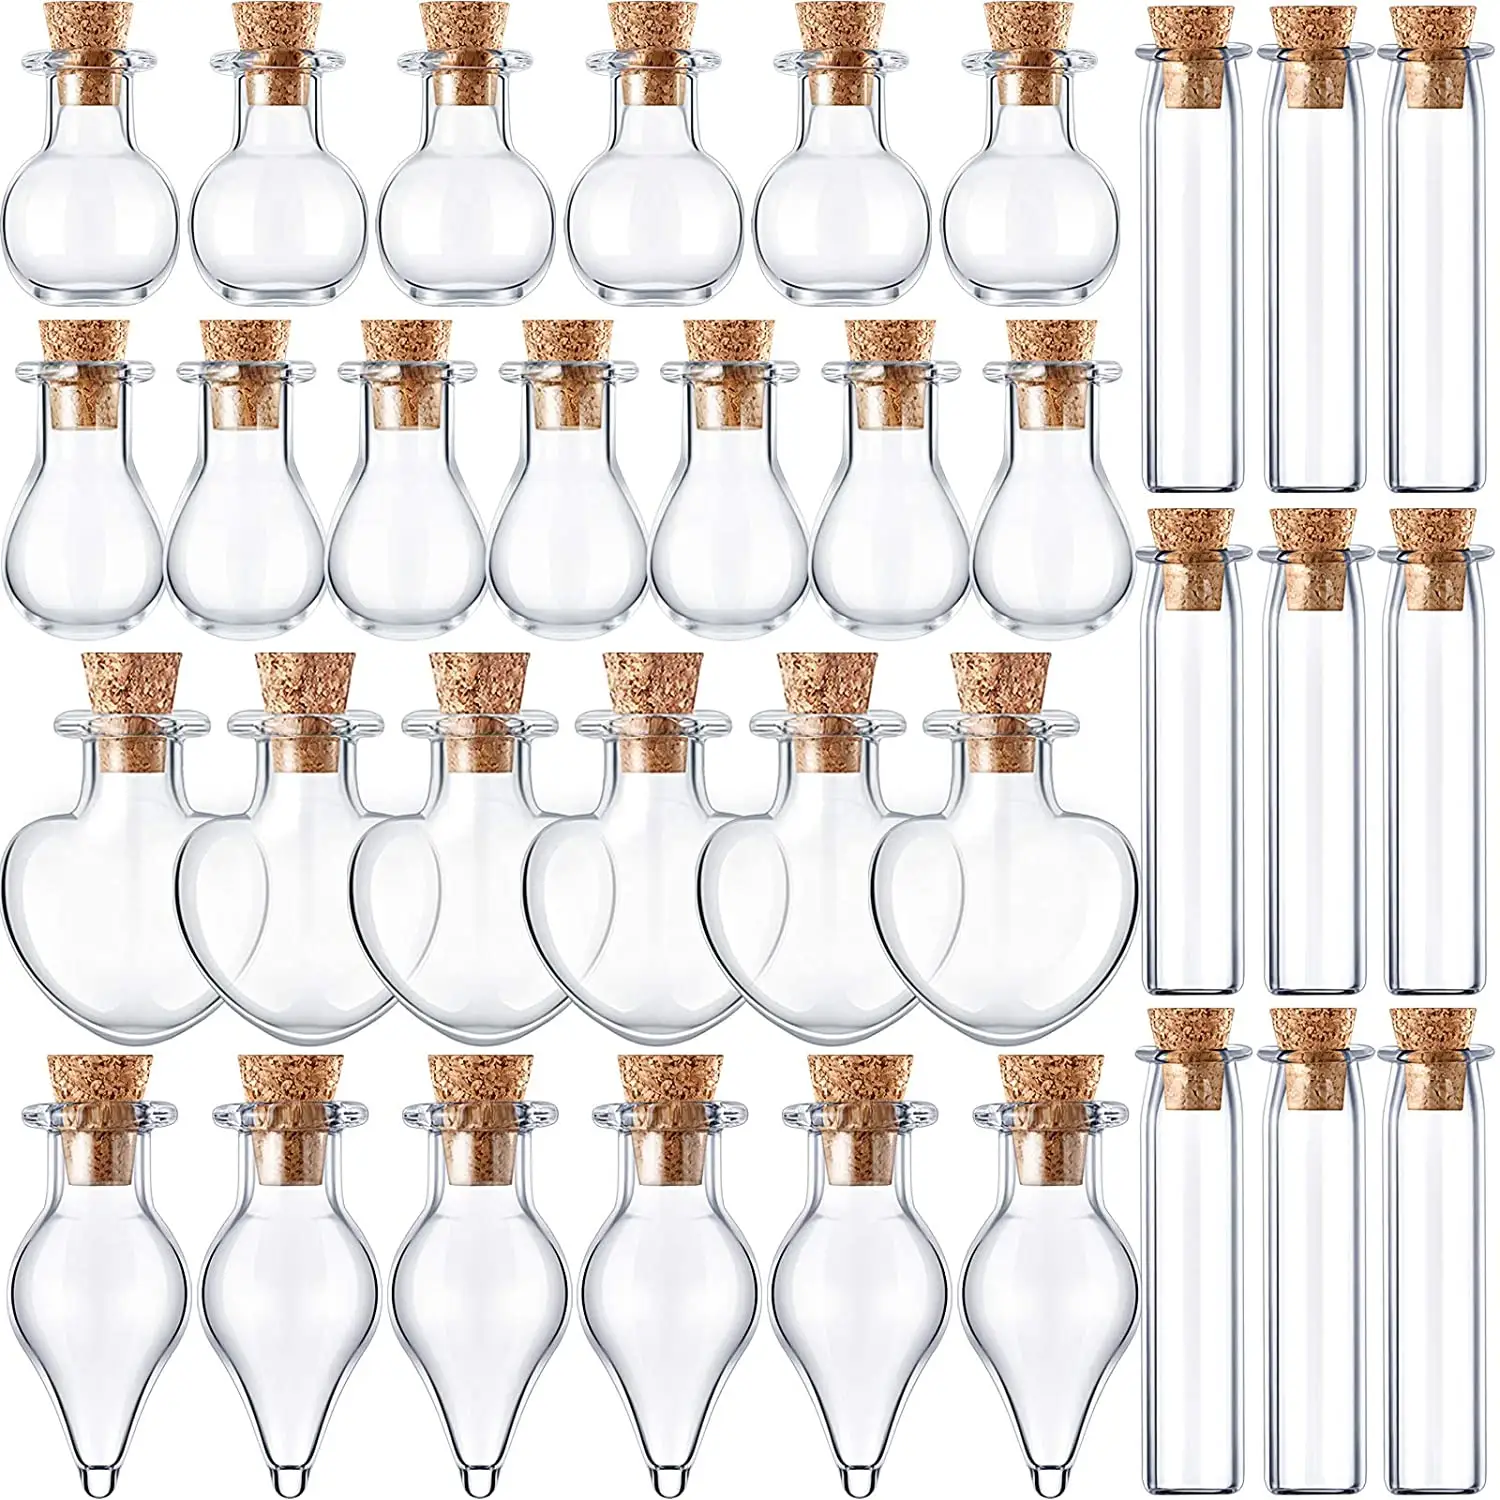 Garrafa de vidro para decoração, mini garrafa de vidro bonita com fecho transparente, frasco de vidro vazio para decoração de artesanato